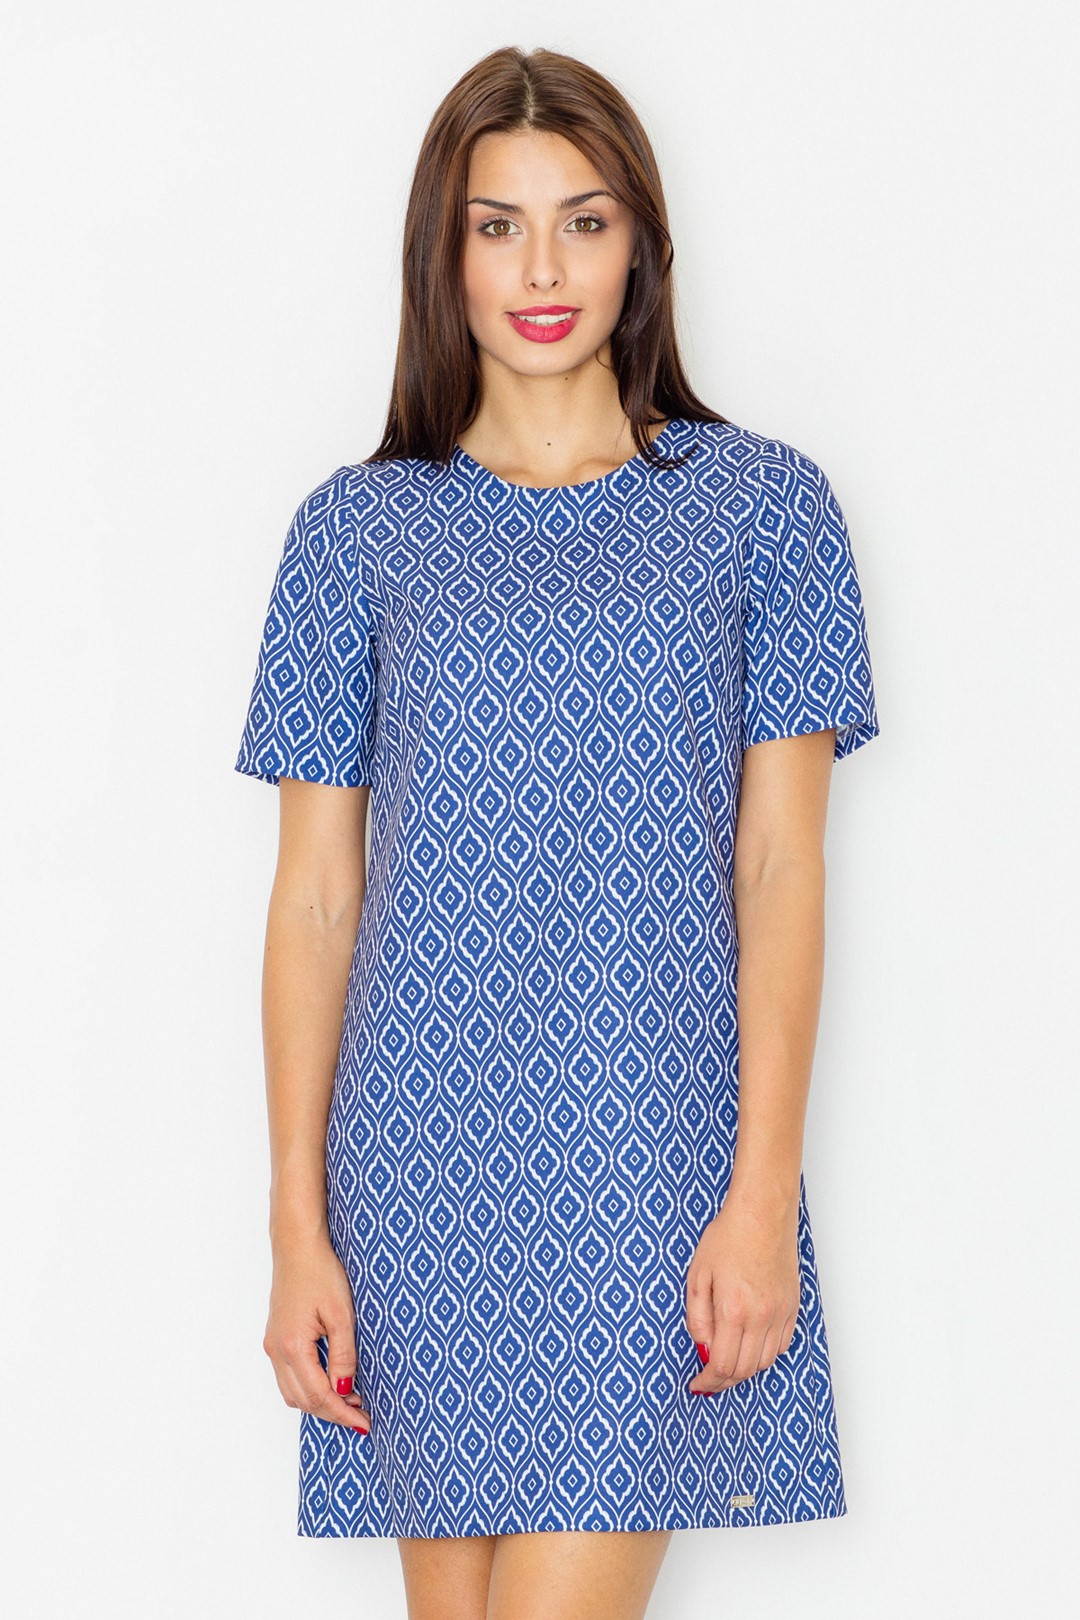 Dámske modré šaty so vzormi M519 Veľkosť: S